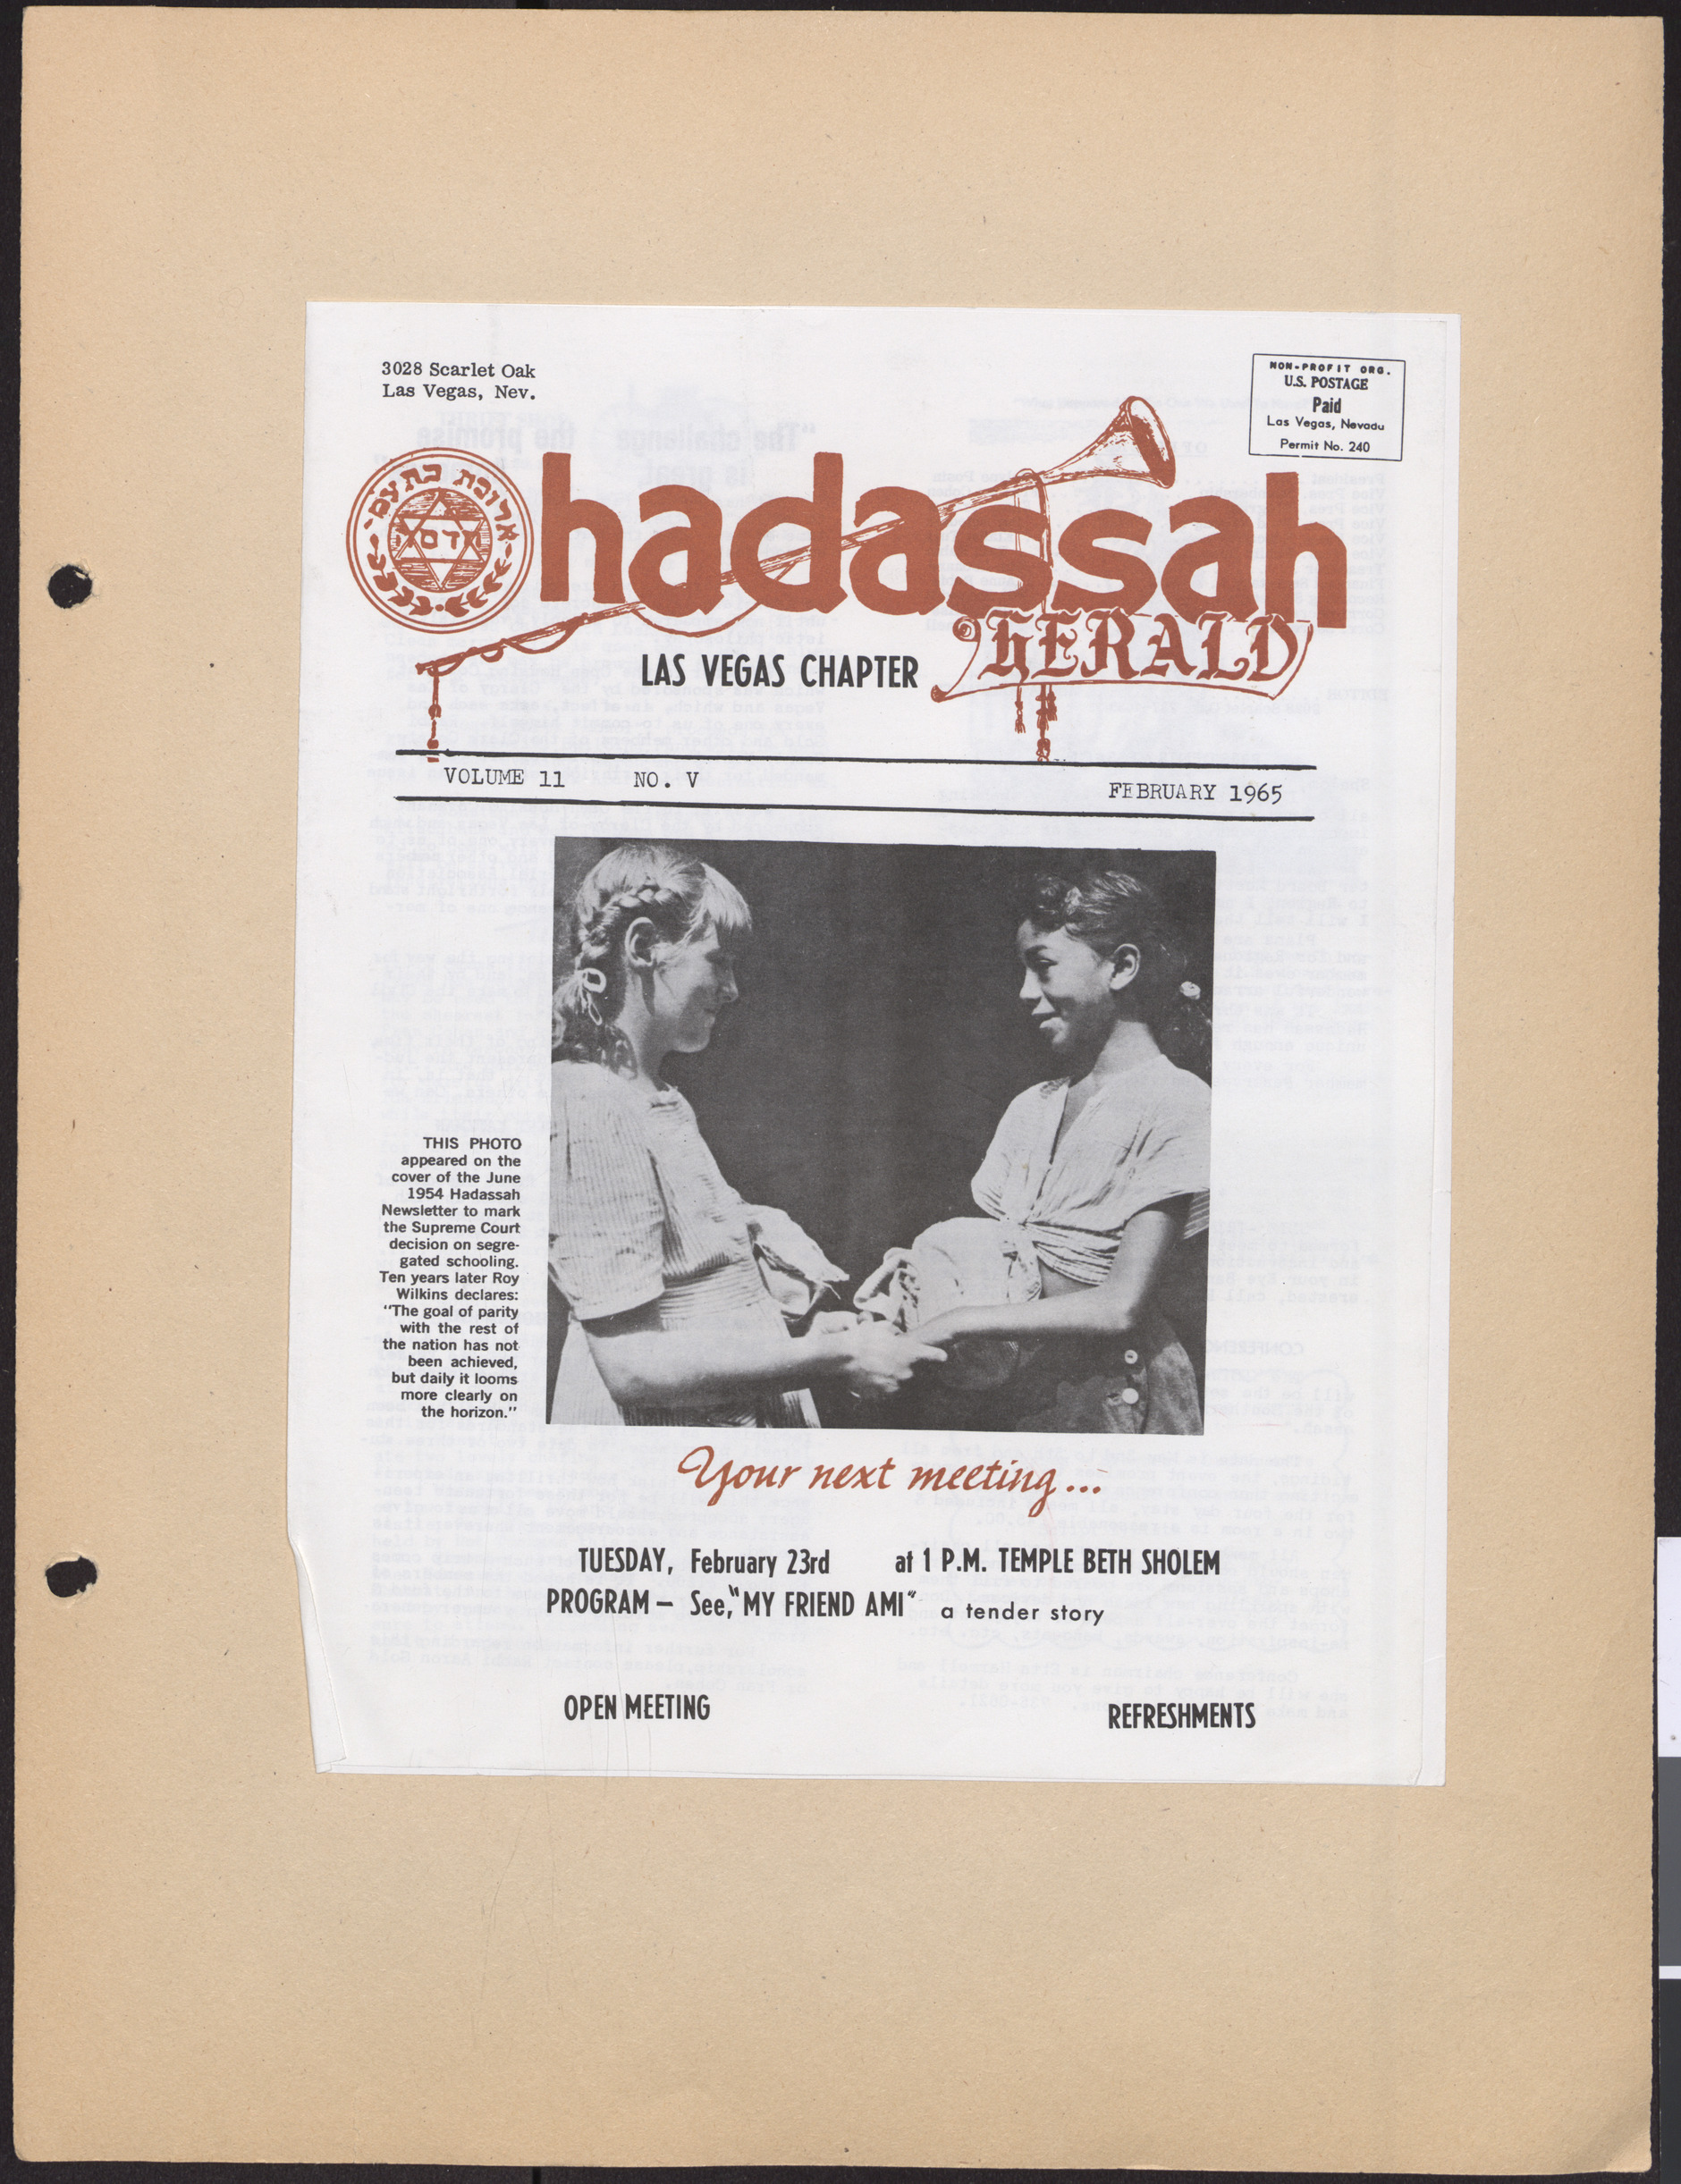 Hadassah Las Vegas Chapter newsletter, February 1965, cover